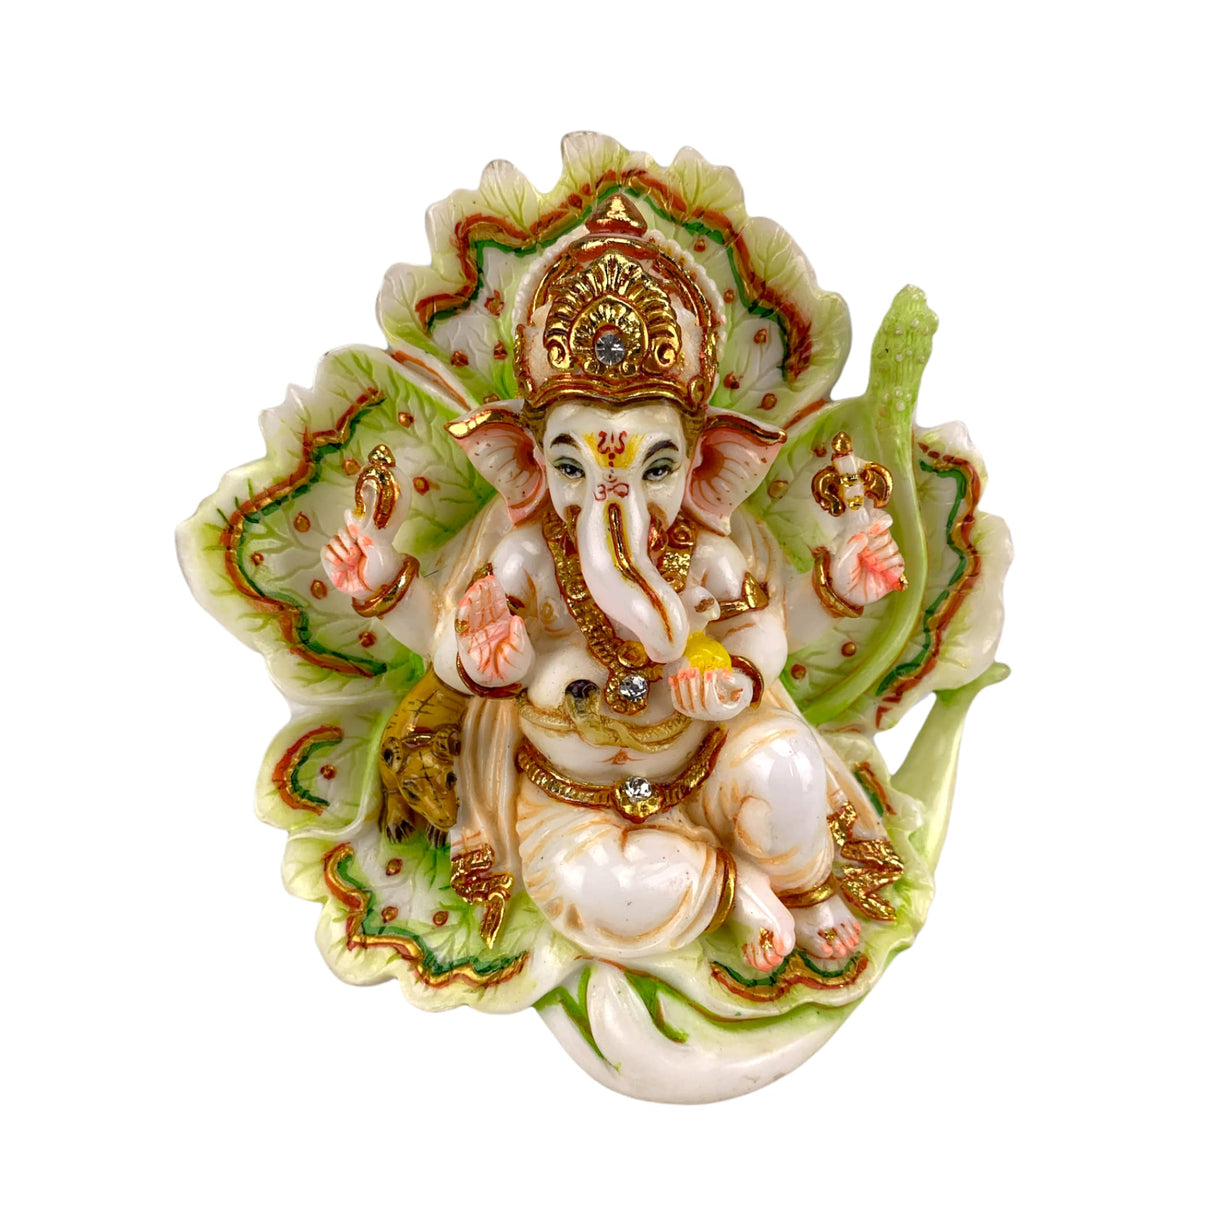 Lord ganesha for car idol showpiece ganpati figurine god